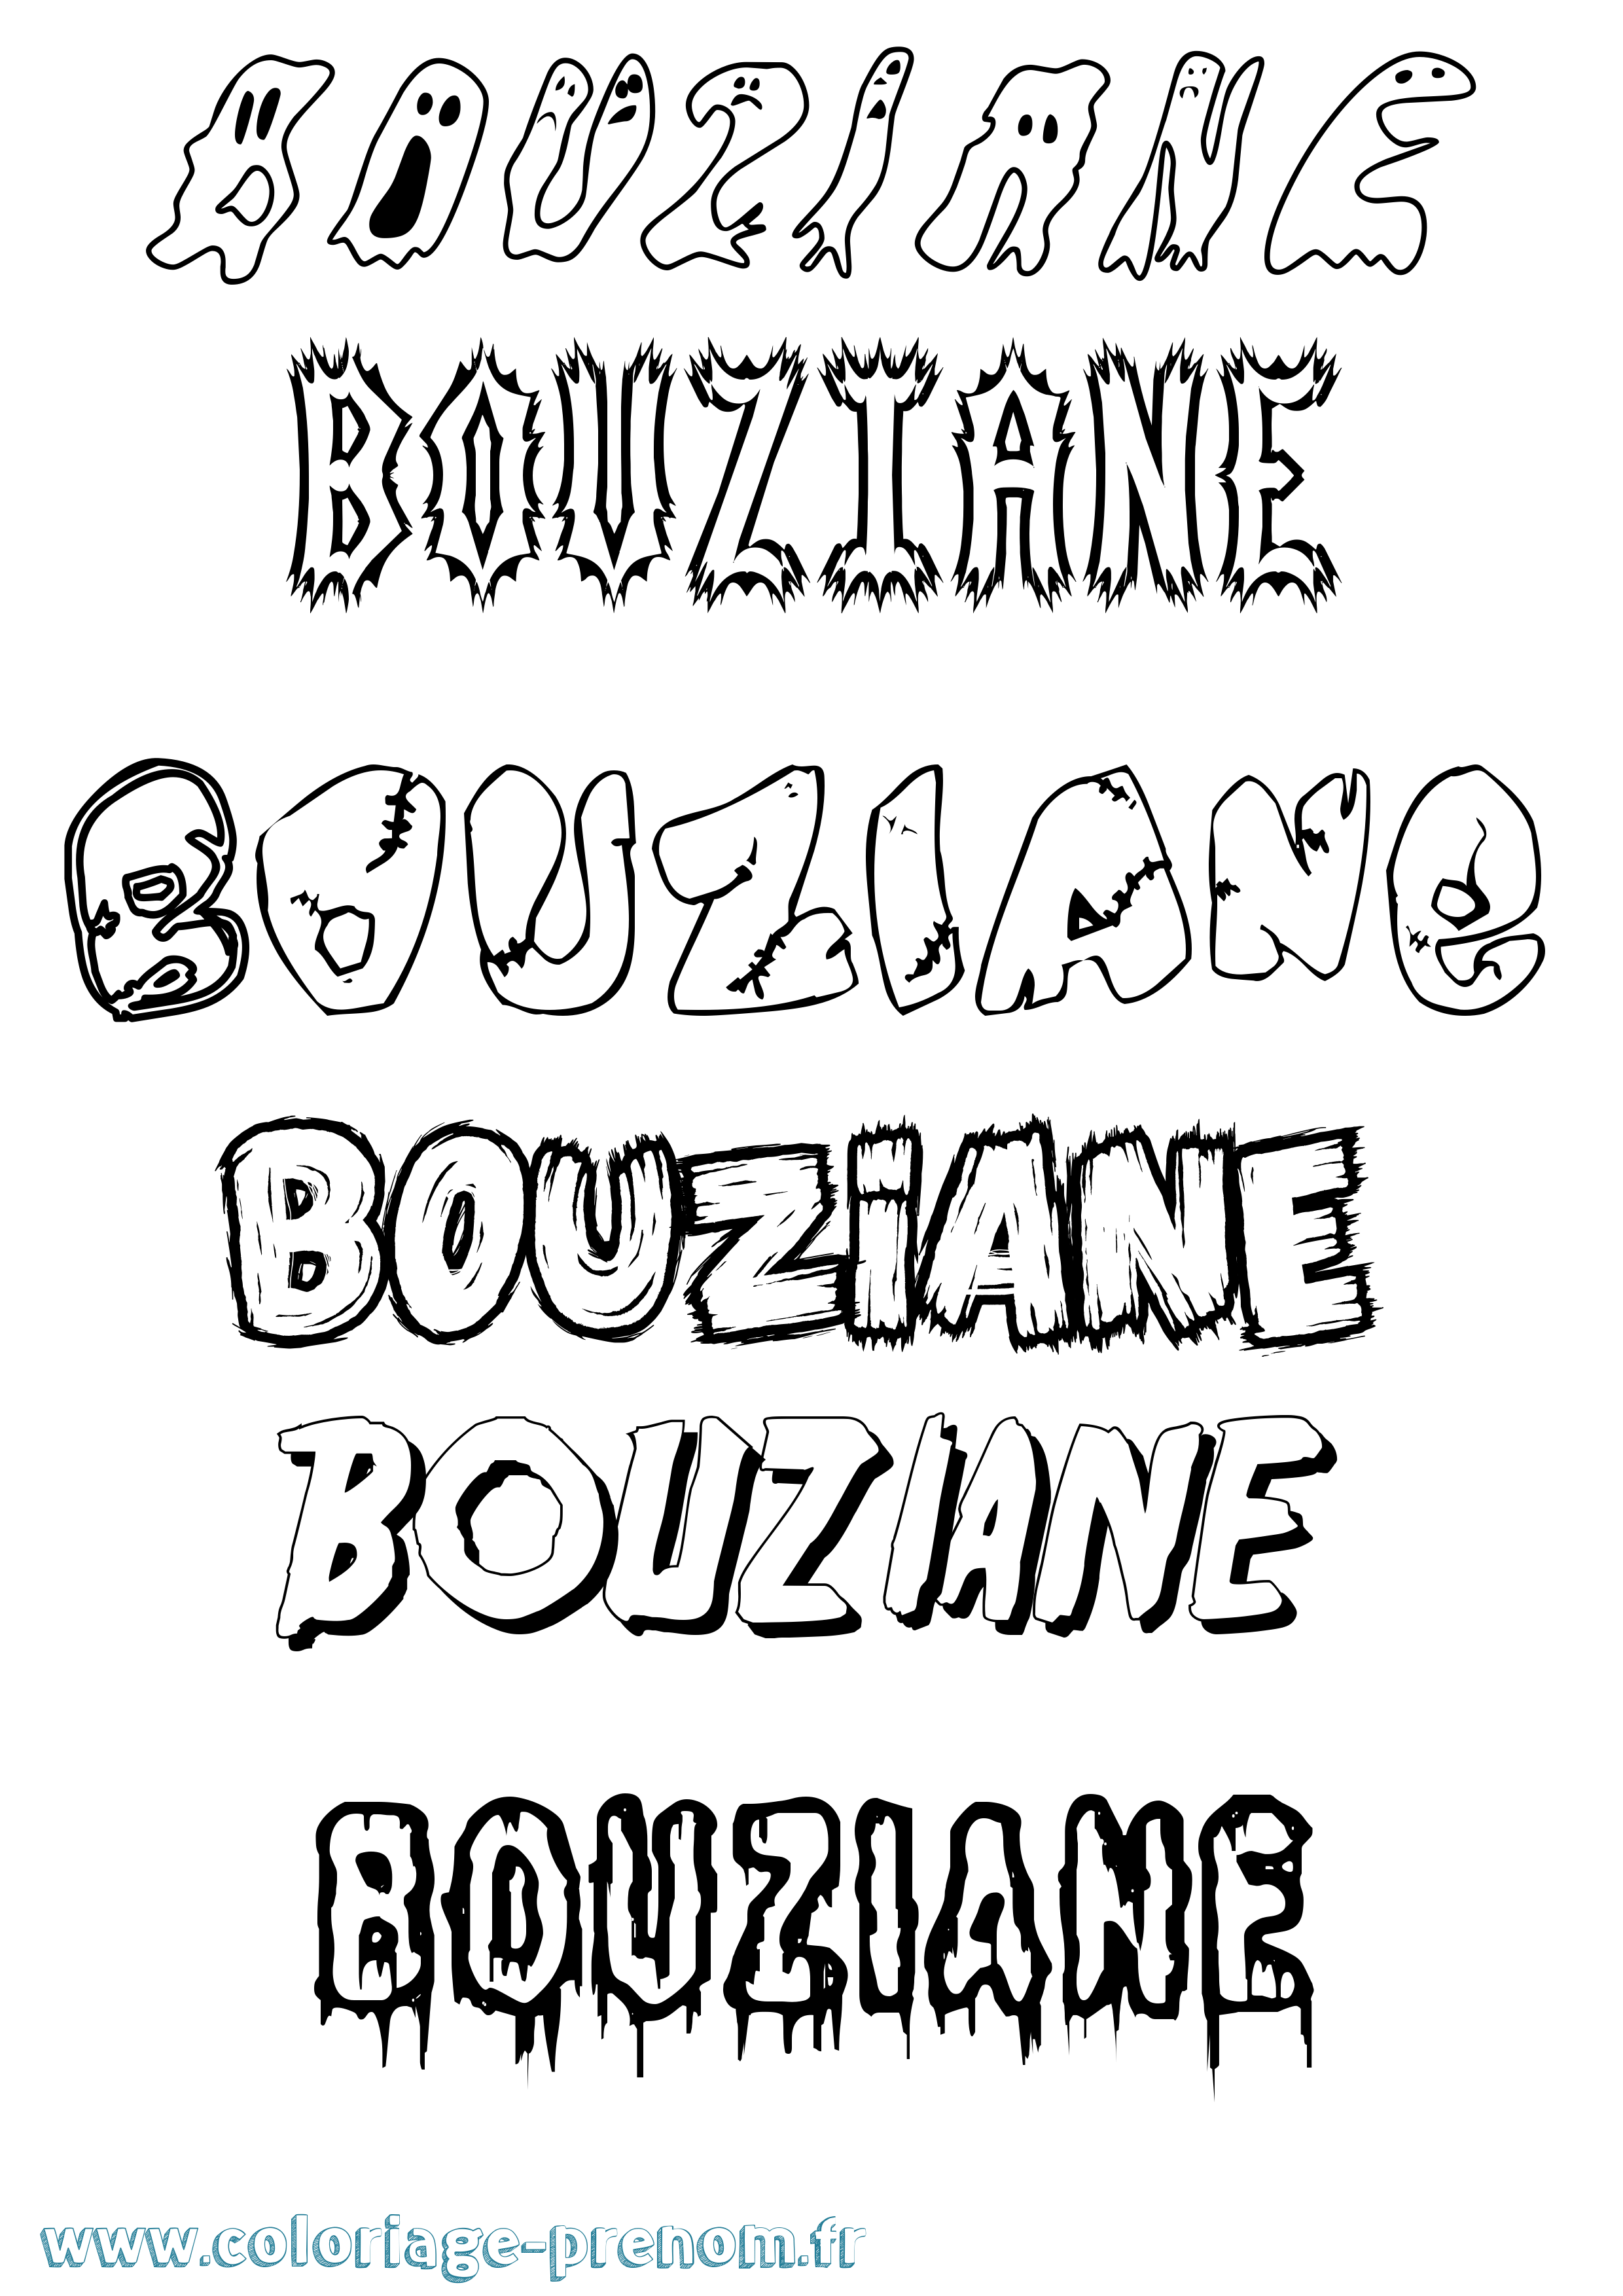 Coloriage prénom Bouziane Frisson